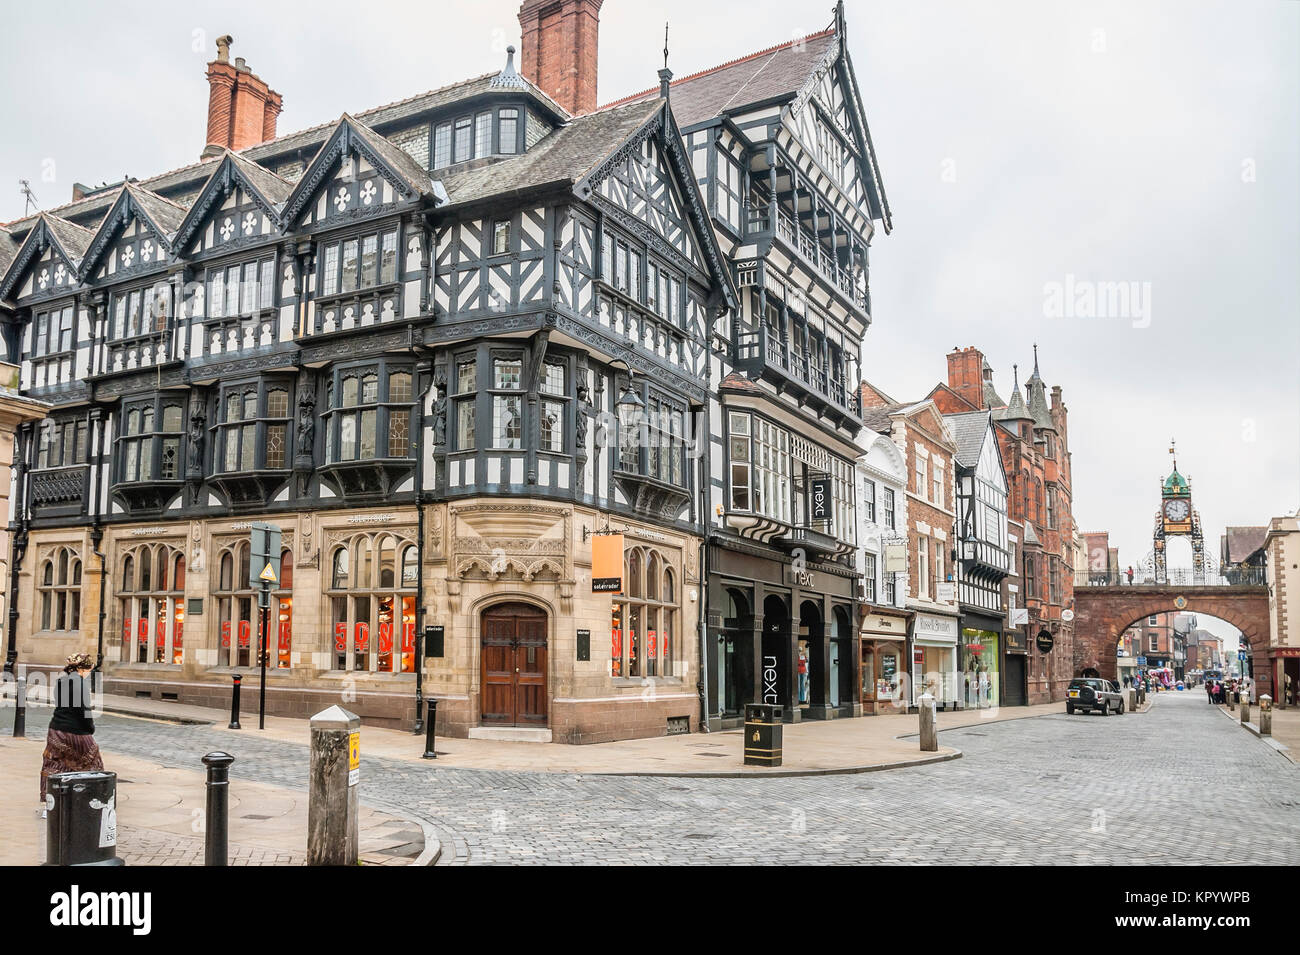 Les Chester Rows, dans la ville de Chester, Cheshire, en Angleterre, sont constitués de passerelles couvertes au premier étage Banque D'Images